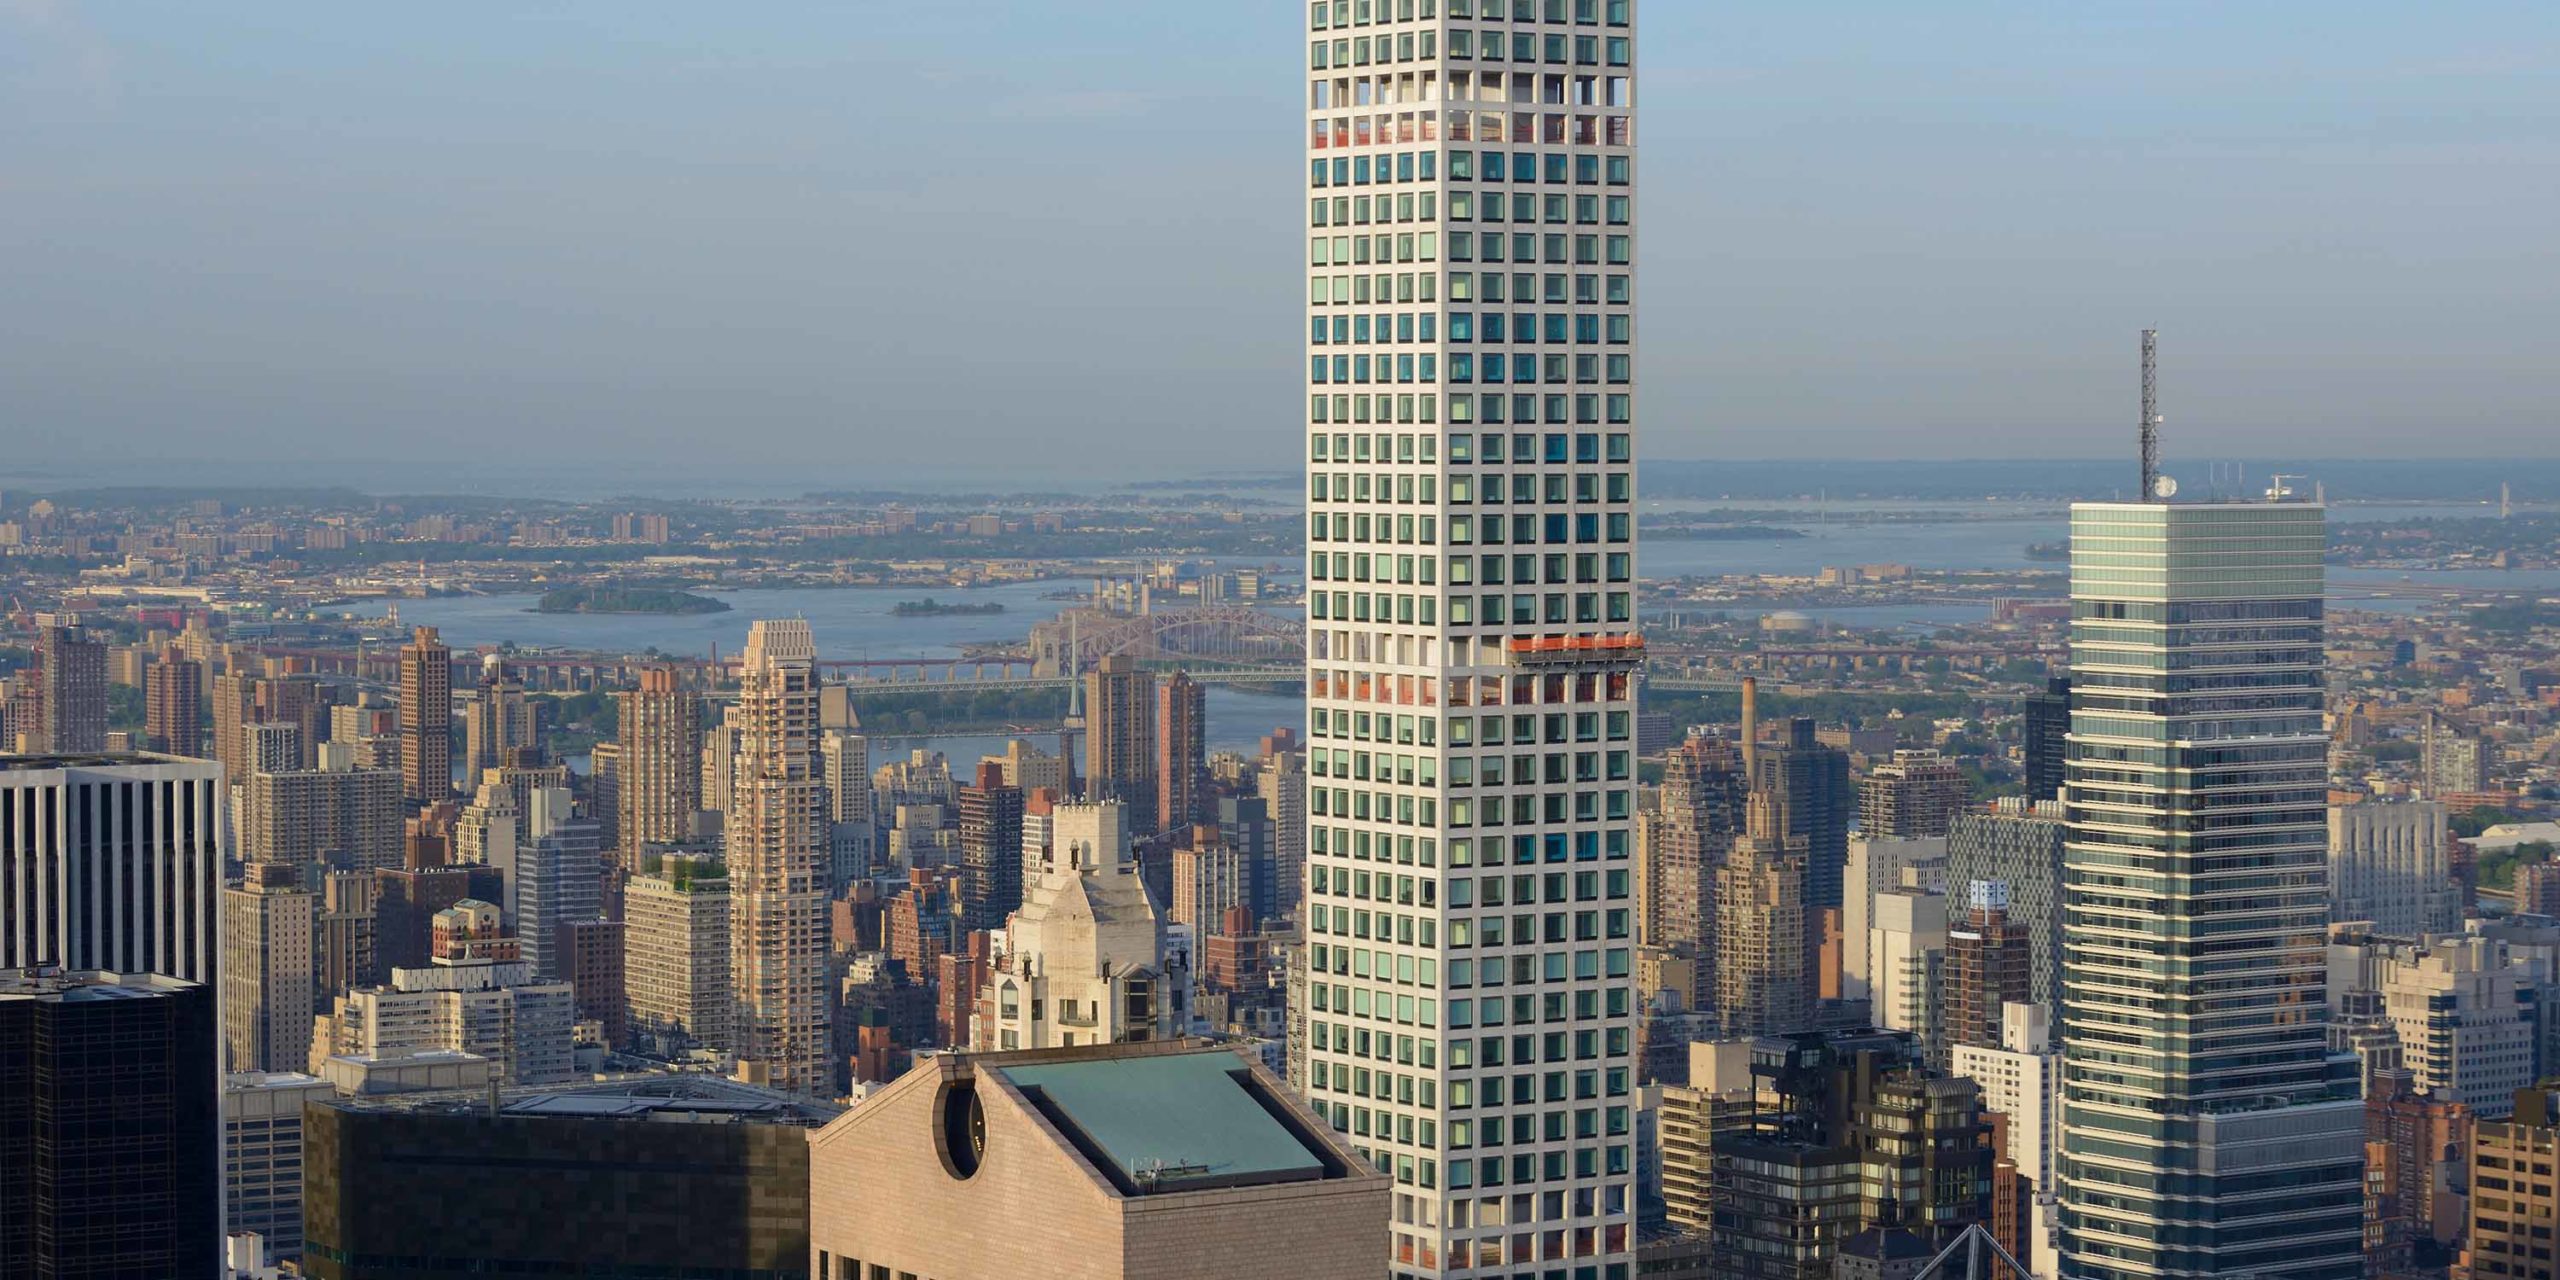 New York Landmarks Redefine Architecture header image #7